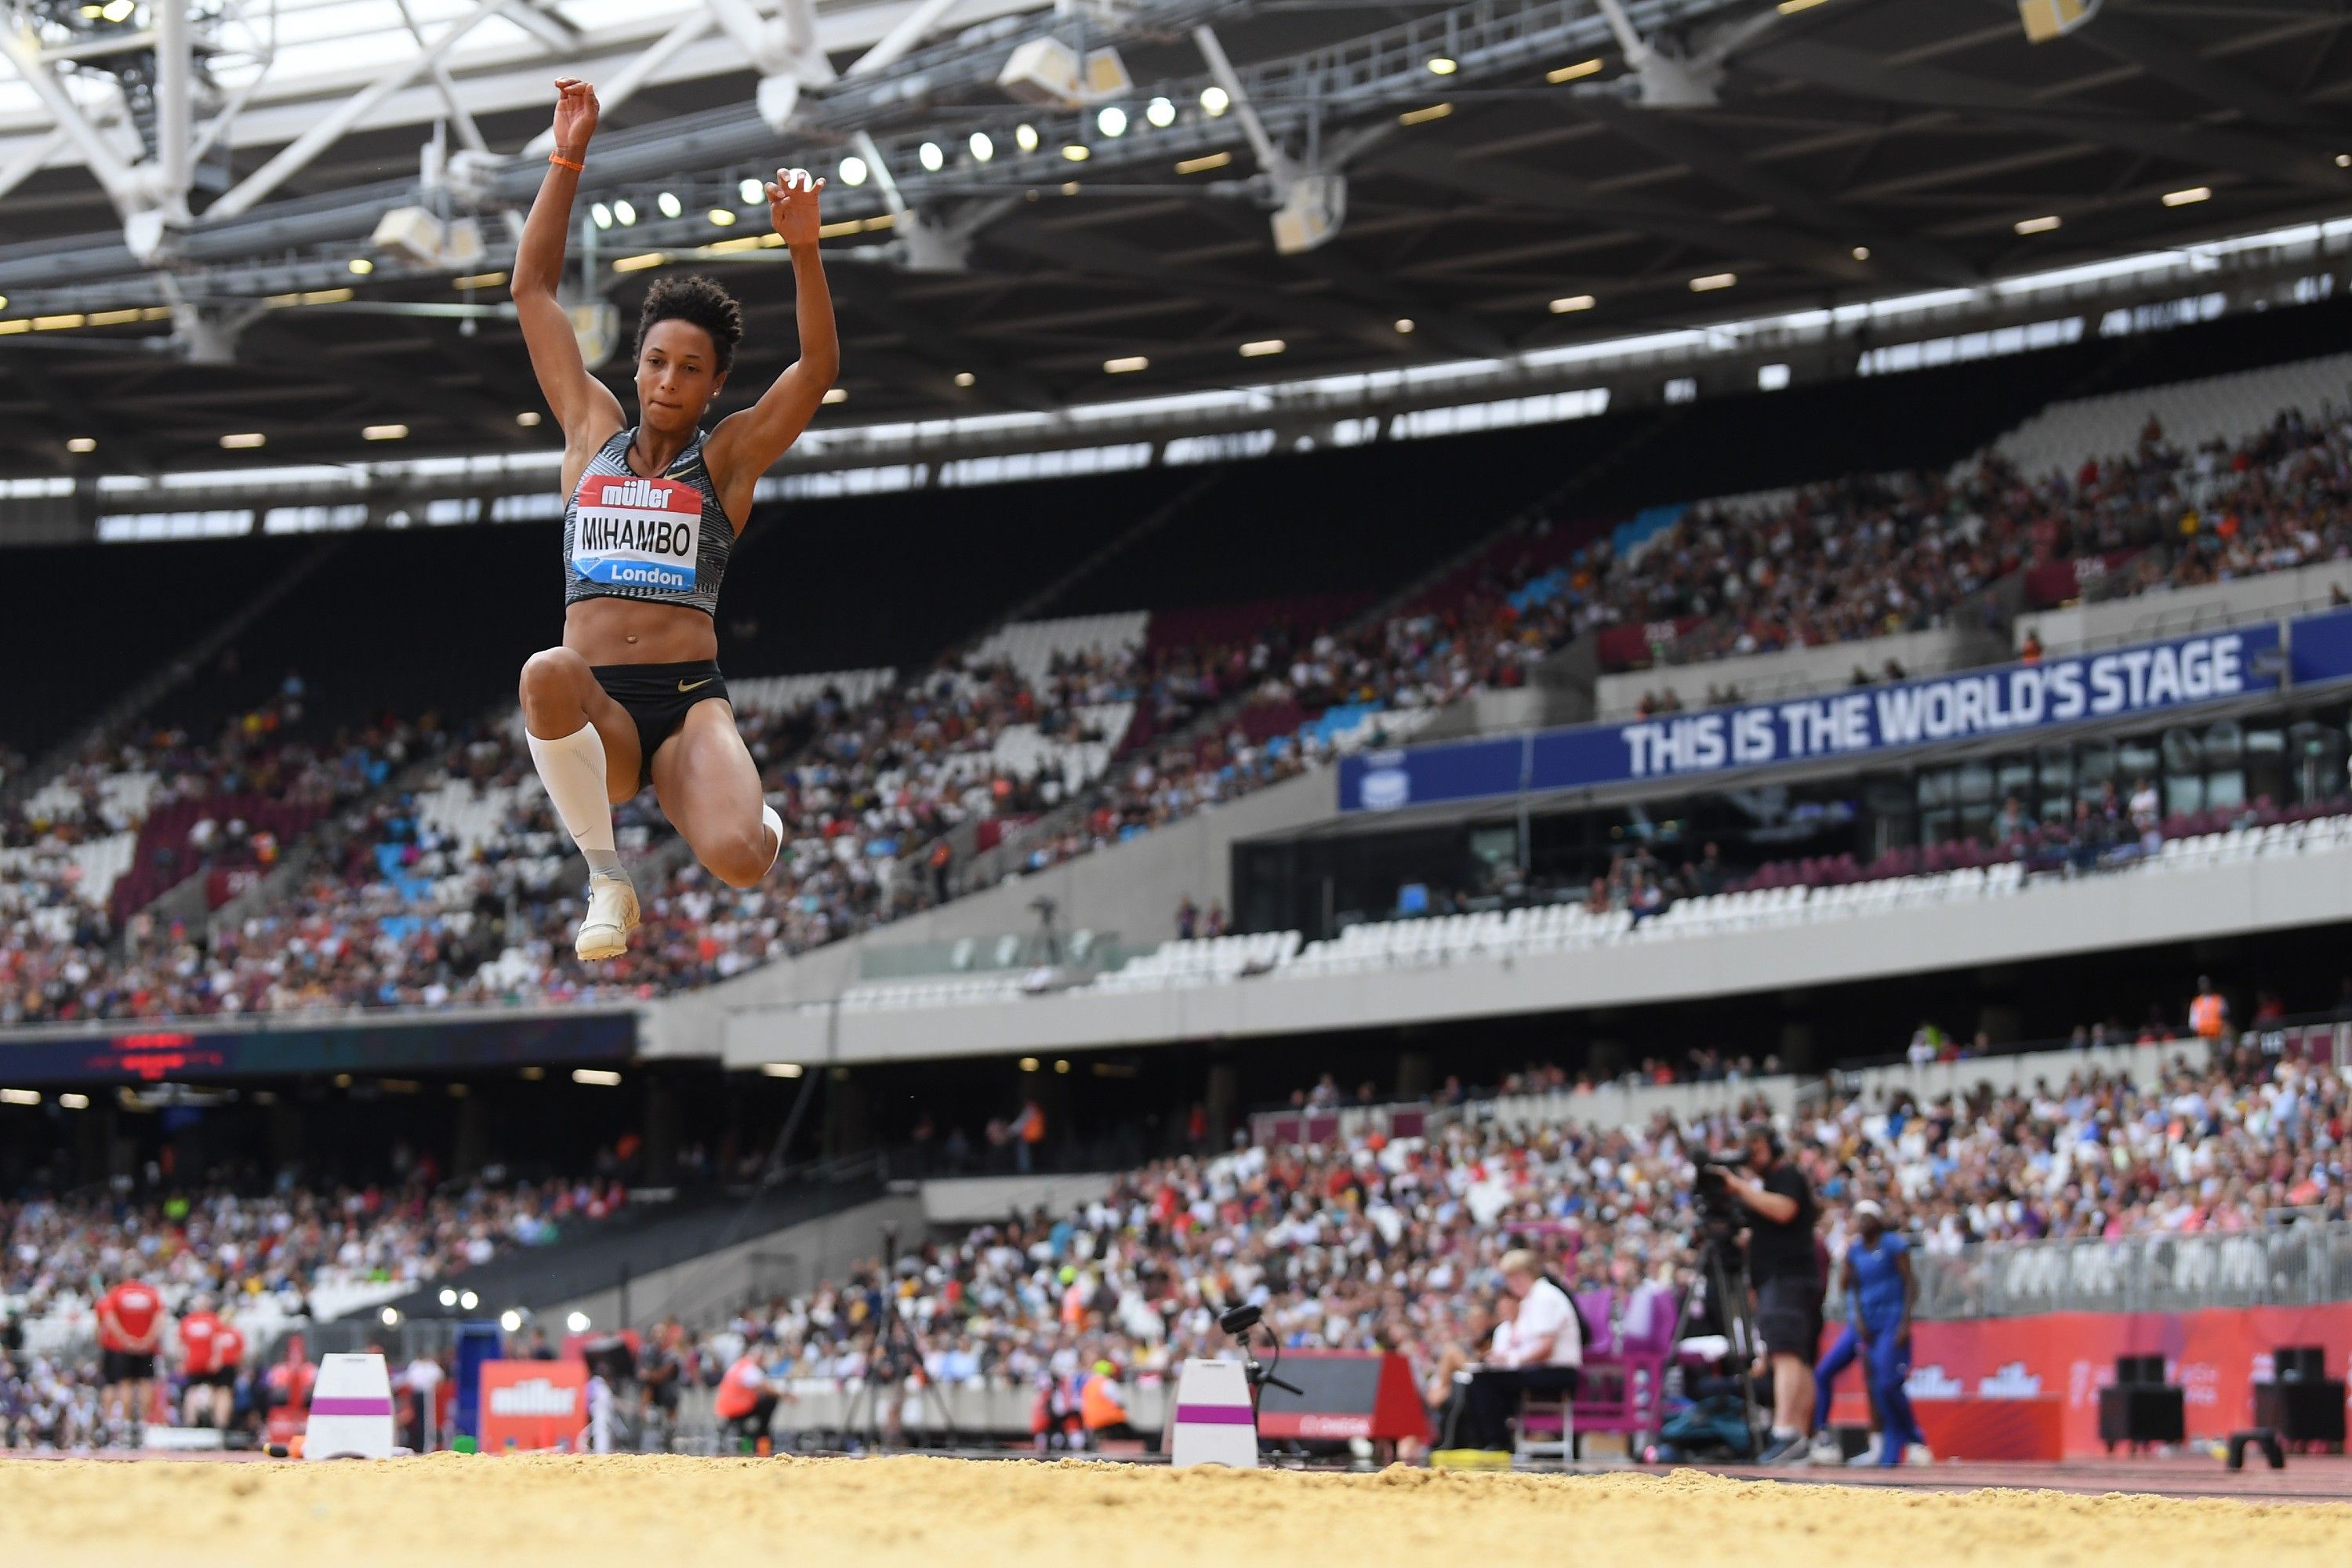 Olympic and world long jump champion Malaika Mihambo